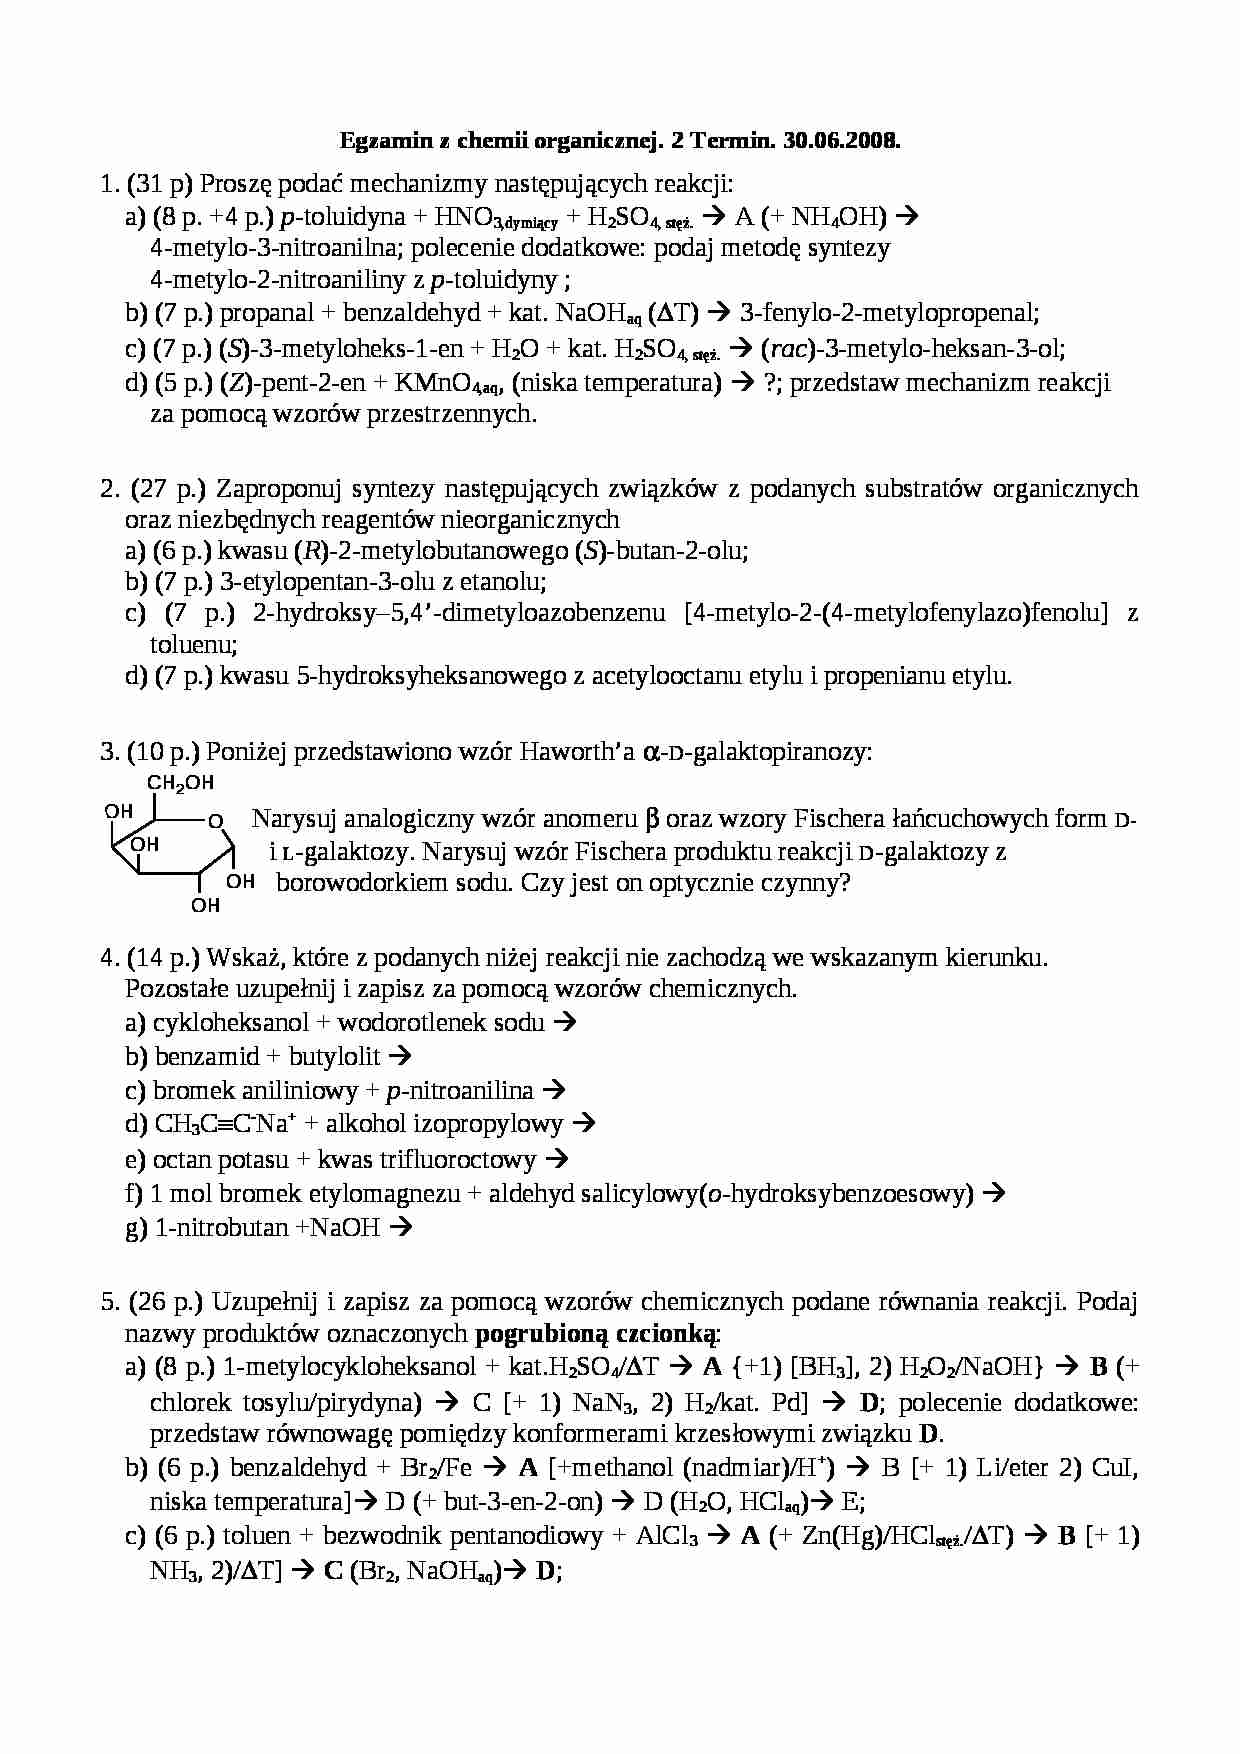 Egzamin z chemii organicznej - Toluidyna - strona 1